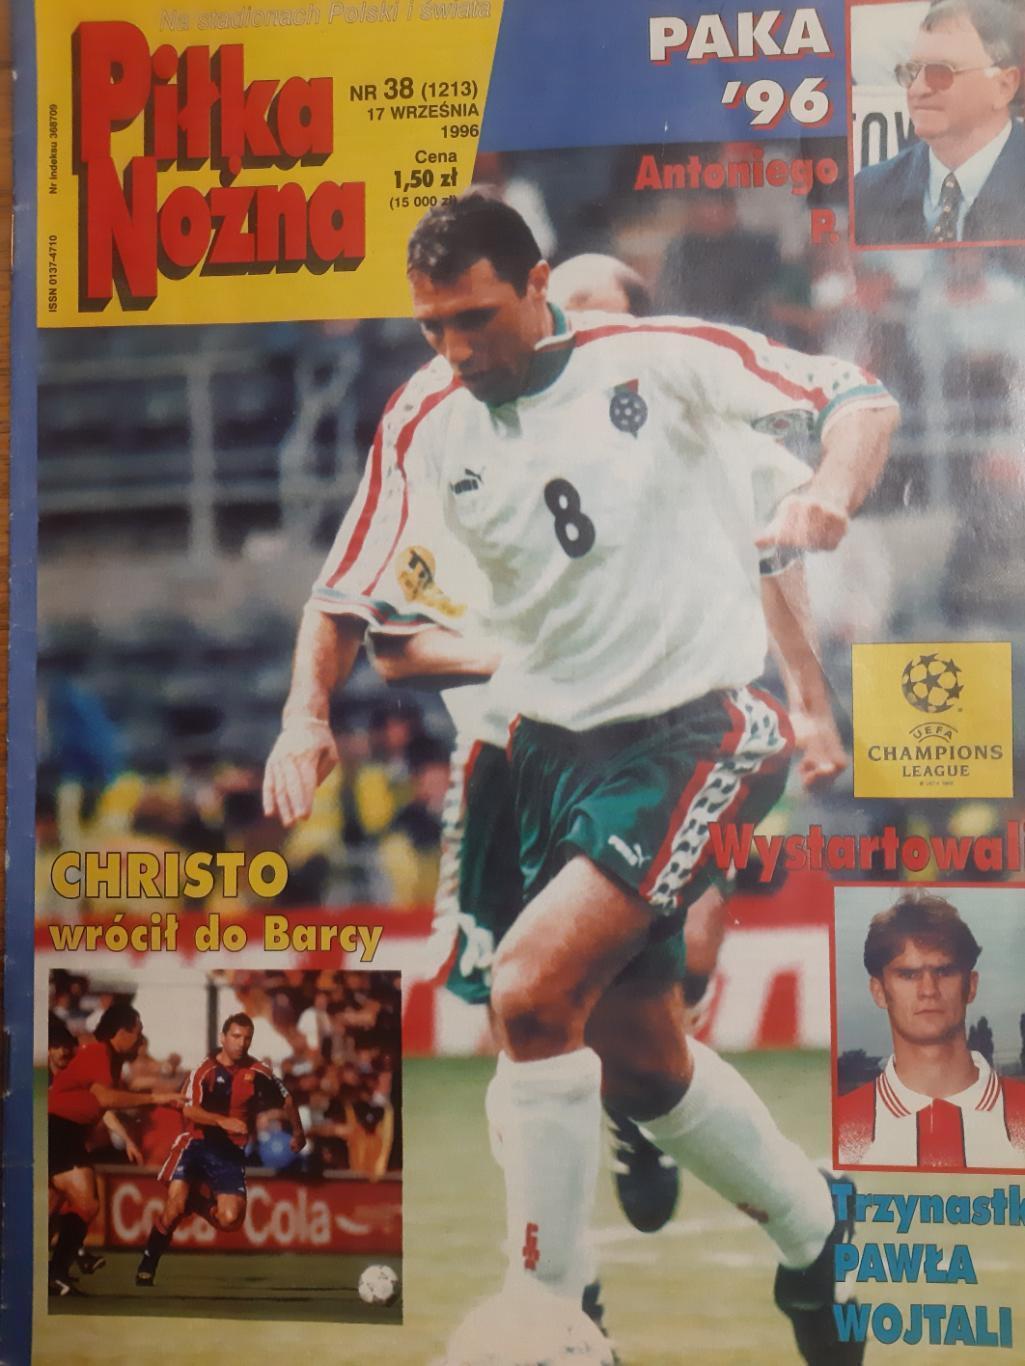 Журнал. Польське видання. Офіційний. Федерація футболу. #38.1996 рік.м.